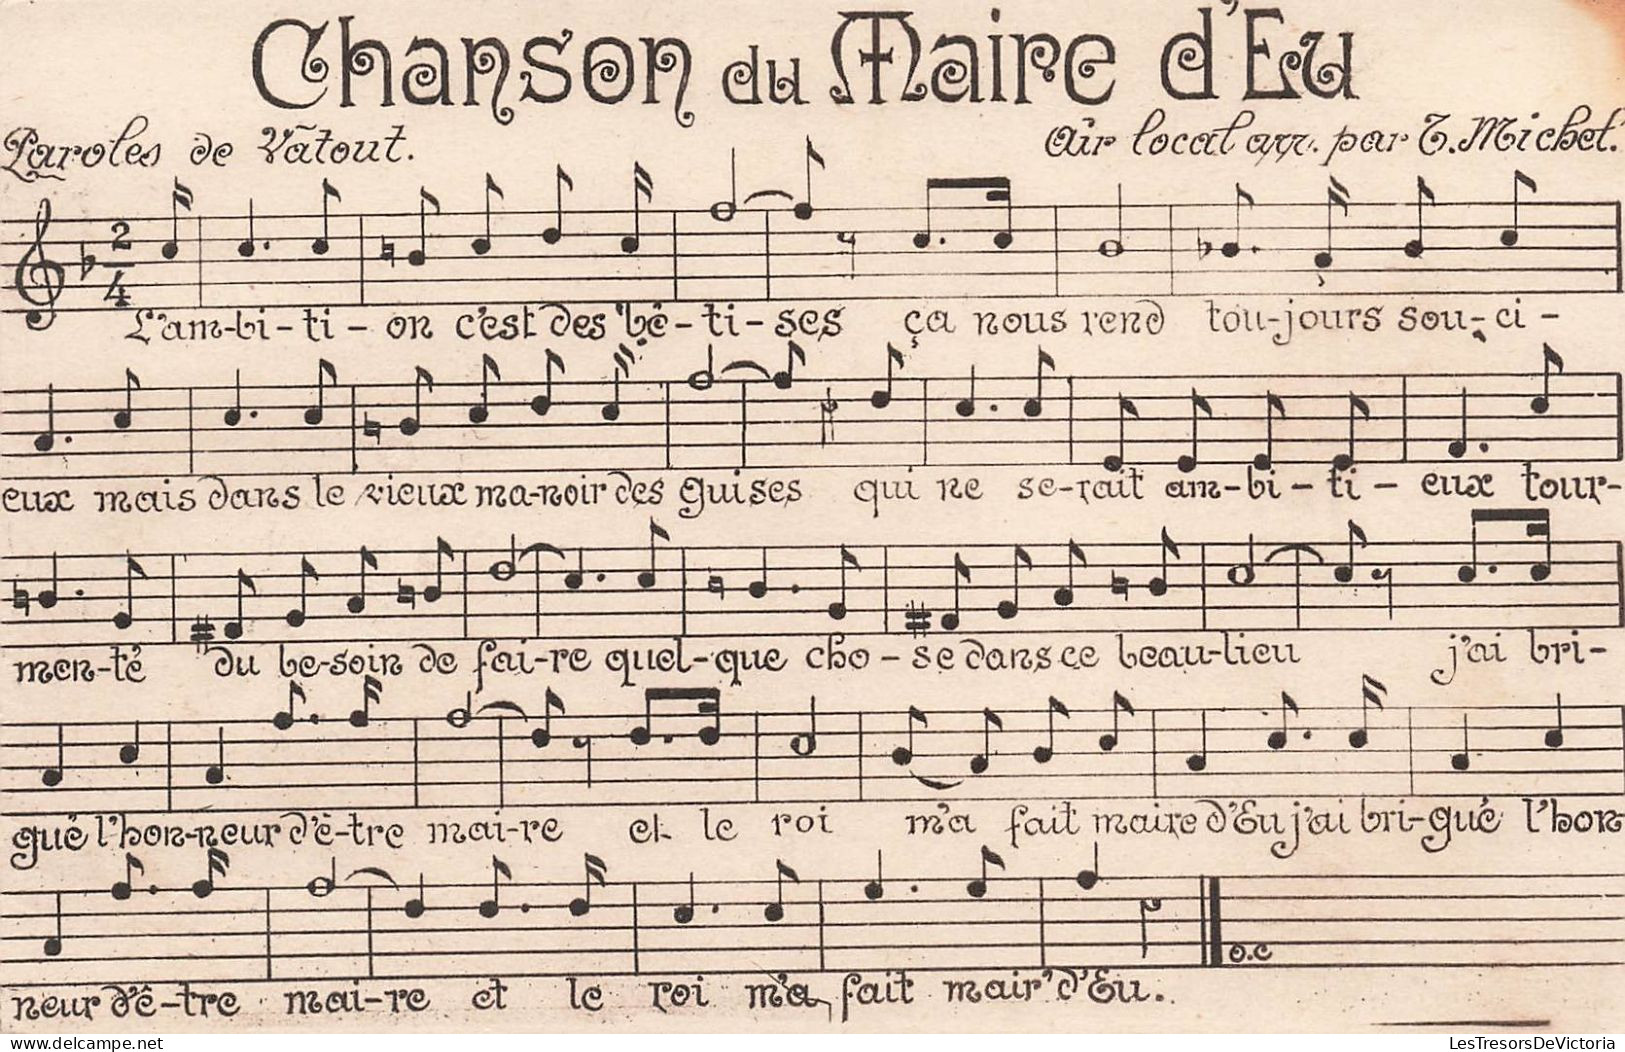 FOLKLORES - Musique - Chanson Du Maire D'Eu - Carte Postale Ancienne - Muziek